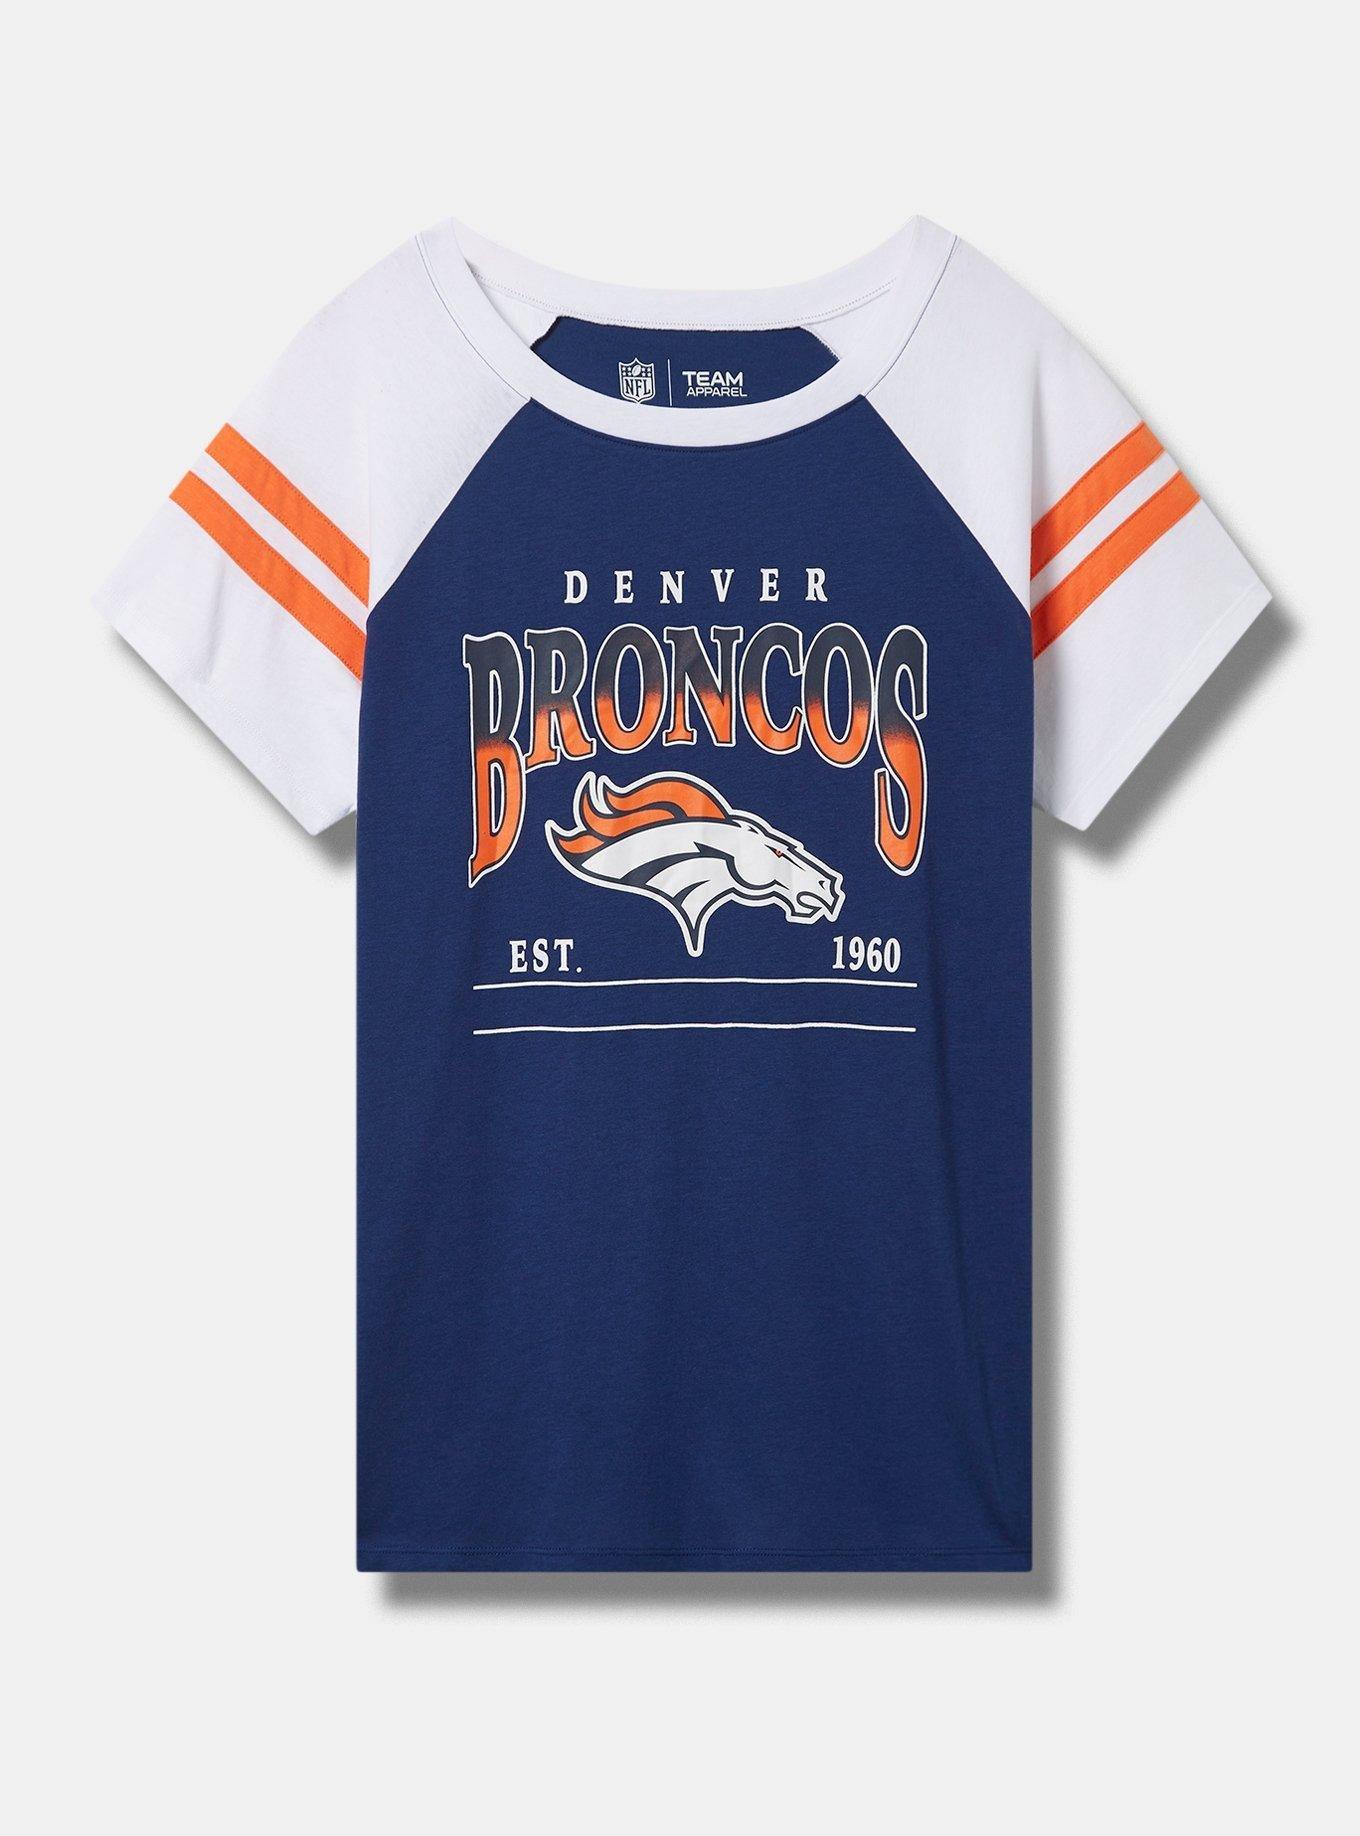 Denver Broncos Youth Apparel on Sale